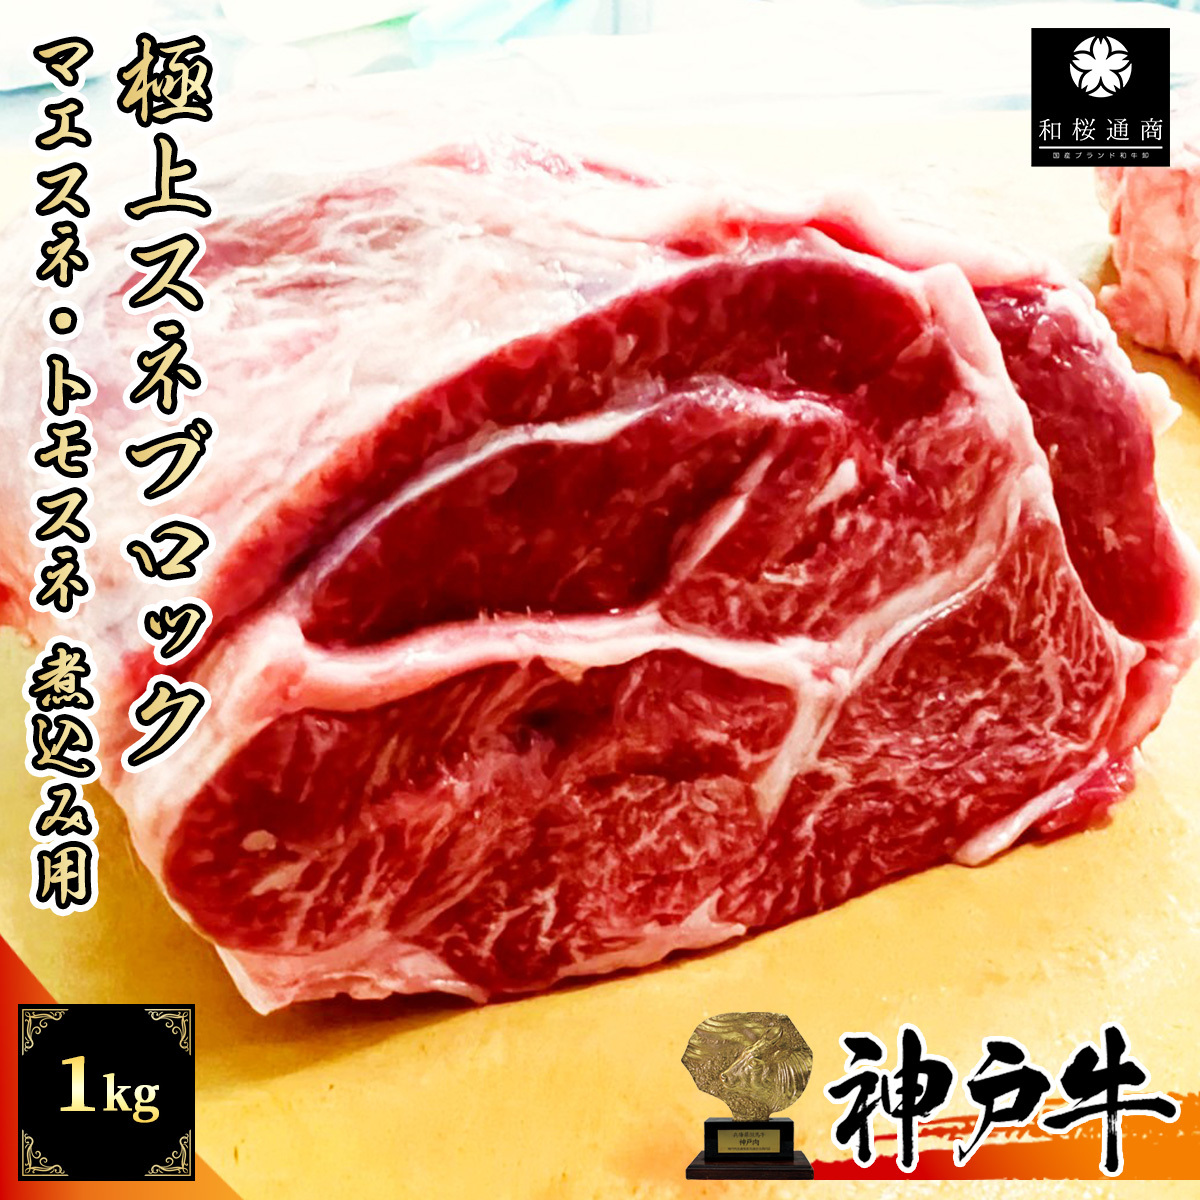 神戸牛 スネ肉 1kg 煮込み用ブロック カレーやポトフなどに